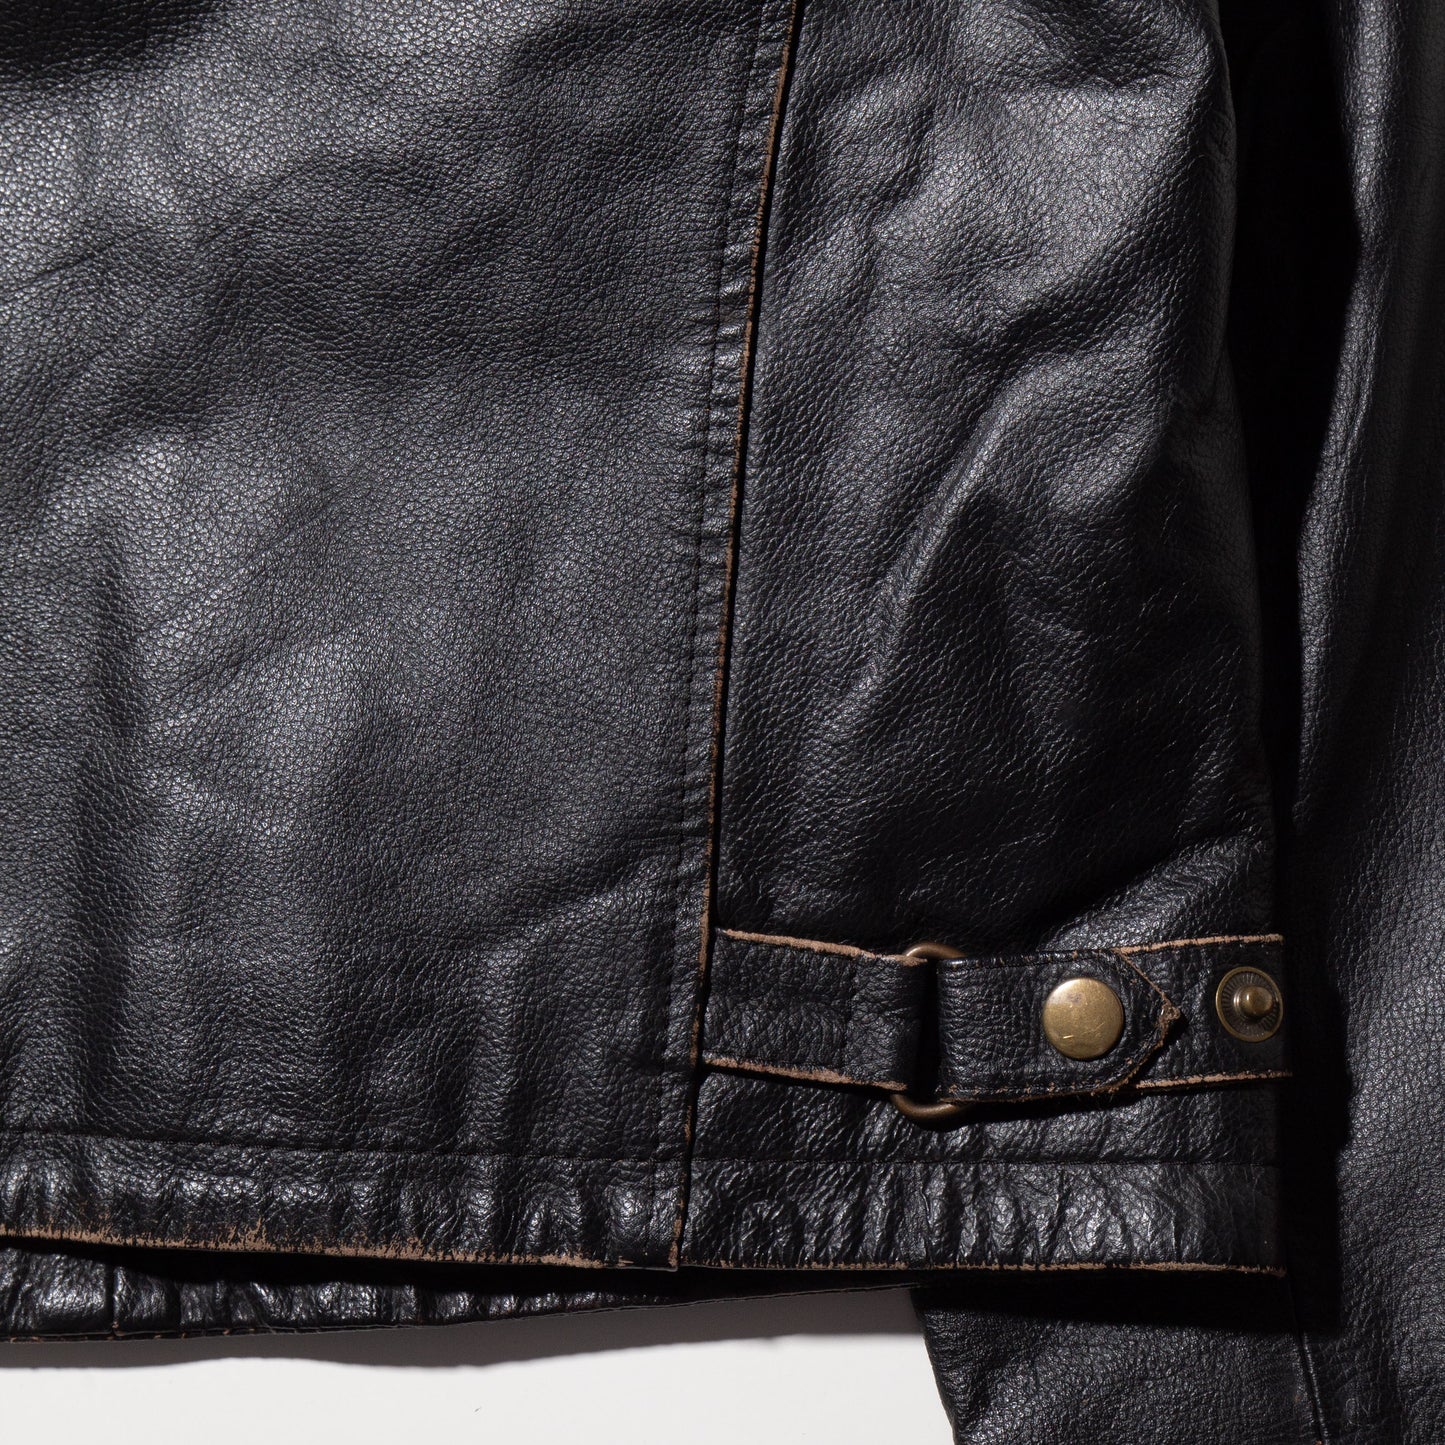 vintage faded leather jacket